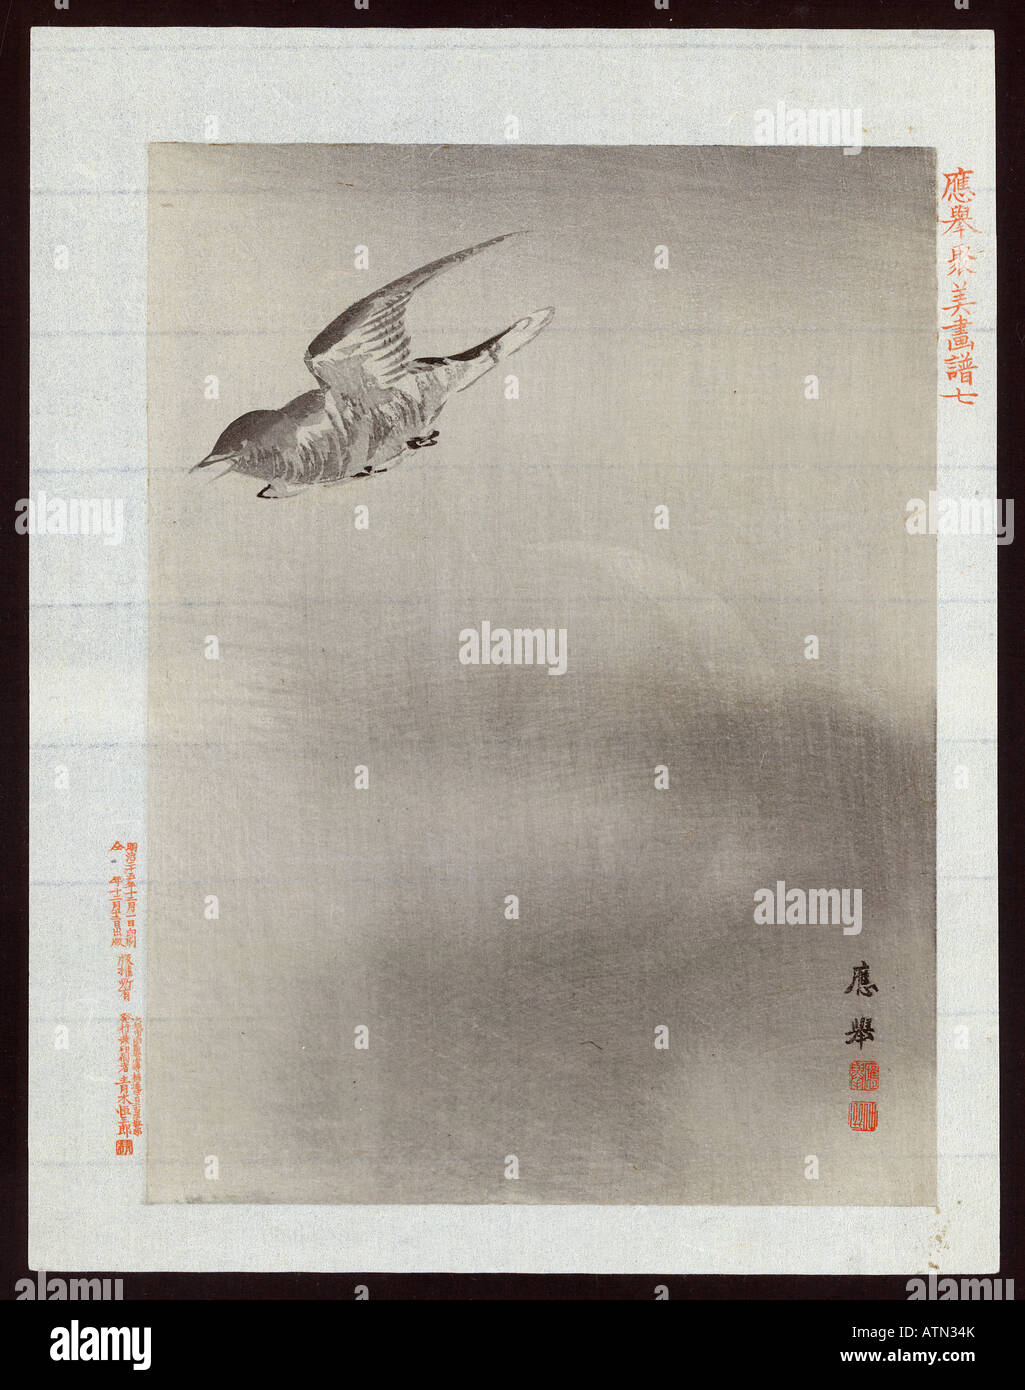 Japanese Ukiyo e print bird in flight Stock Photo